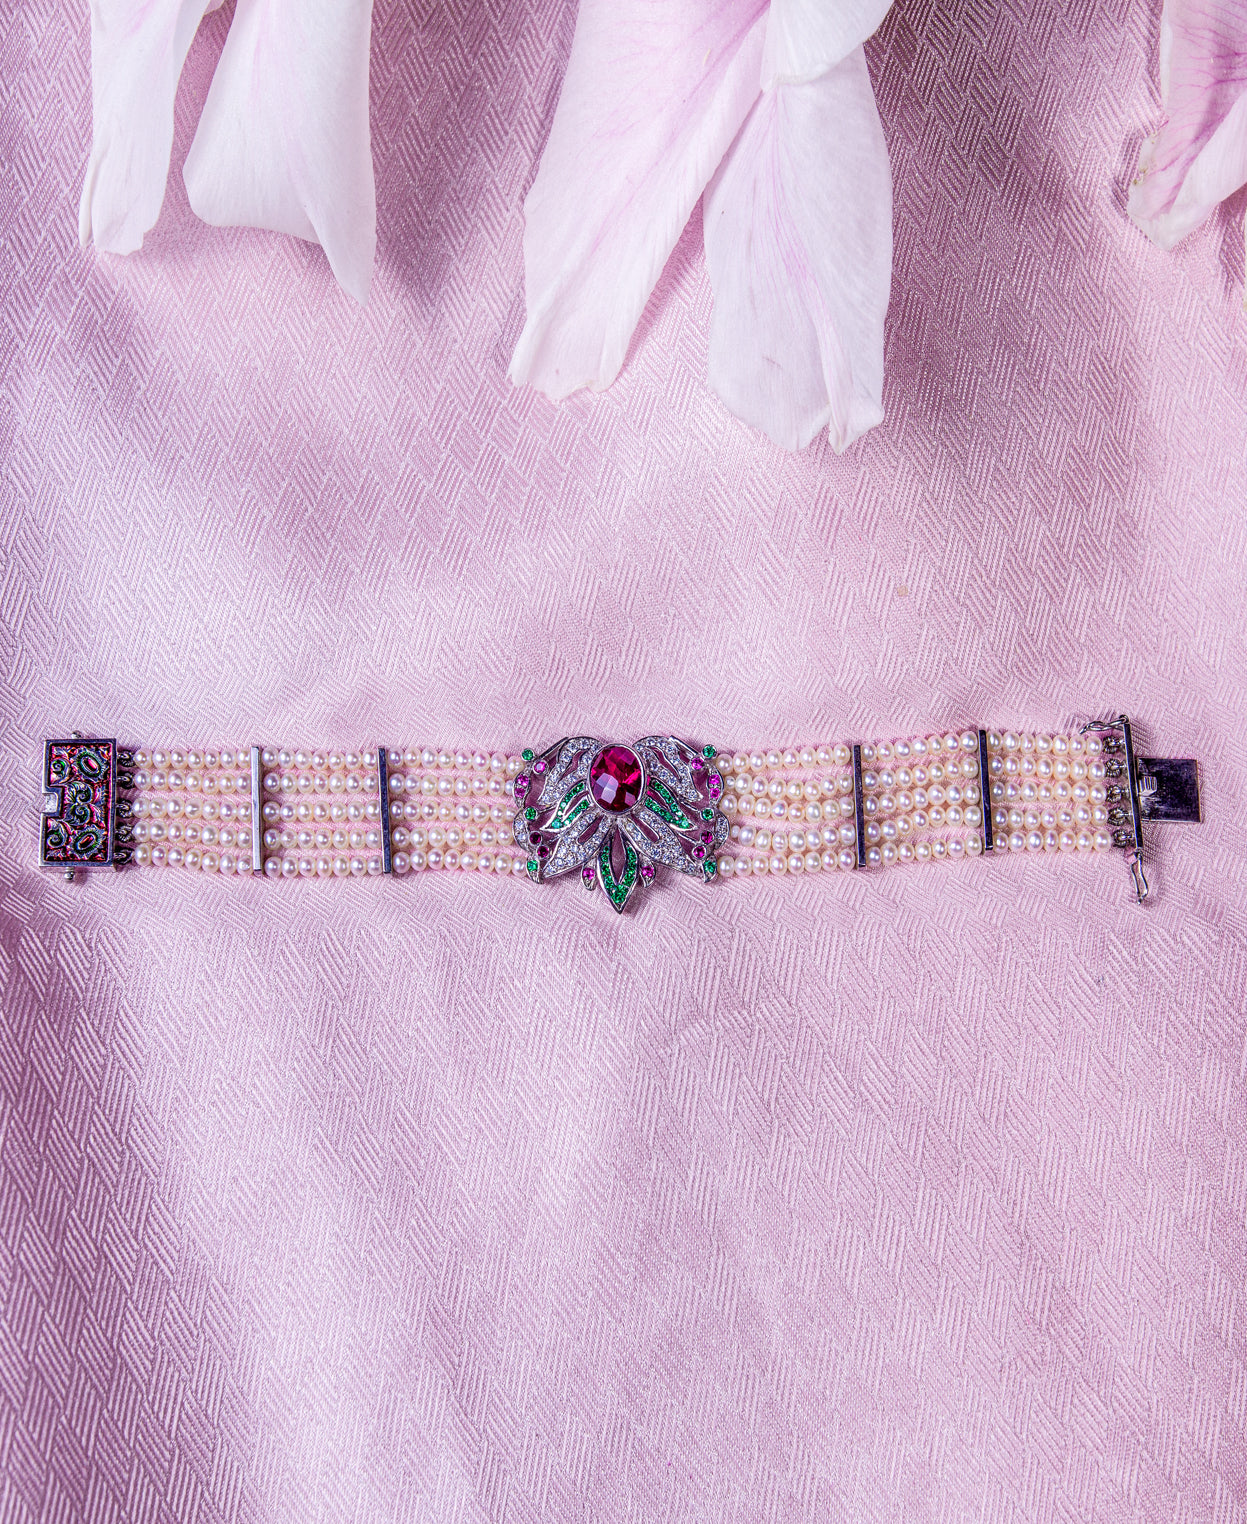 Vintage Bracelet with Pearl Strings